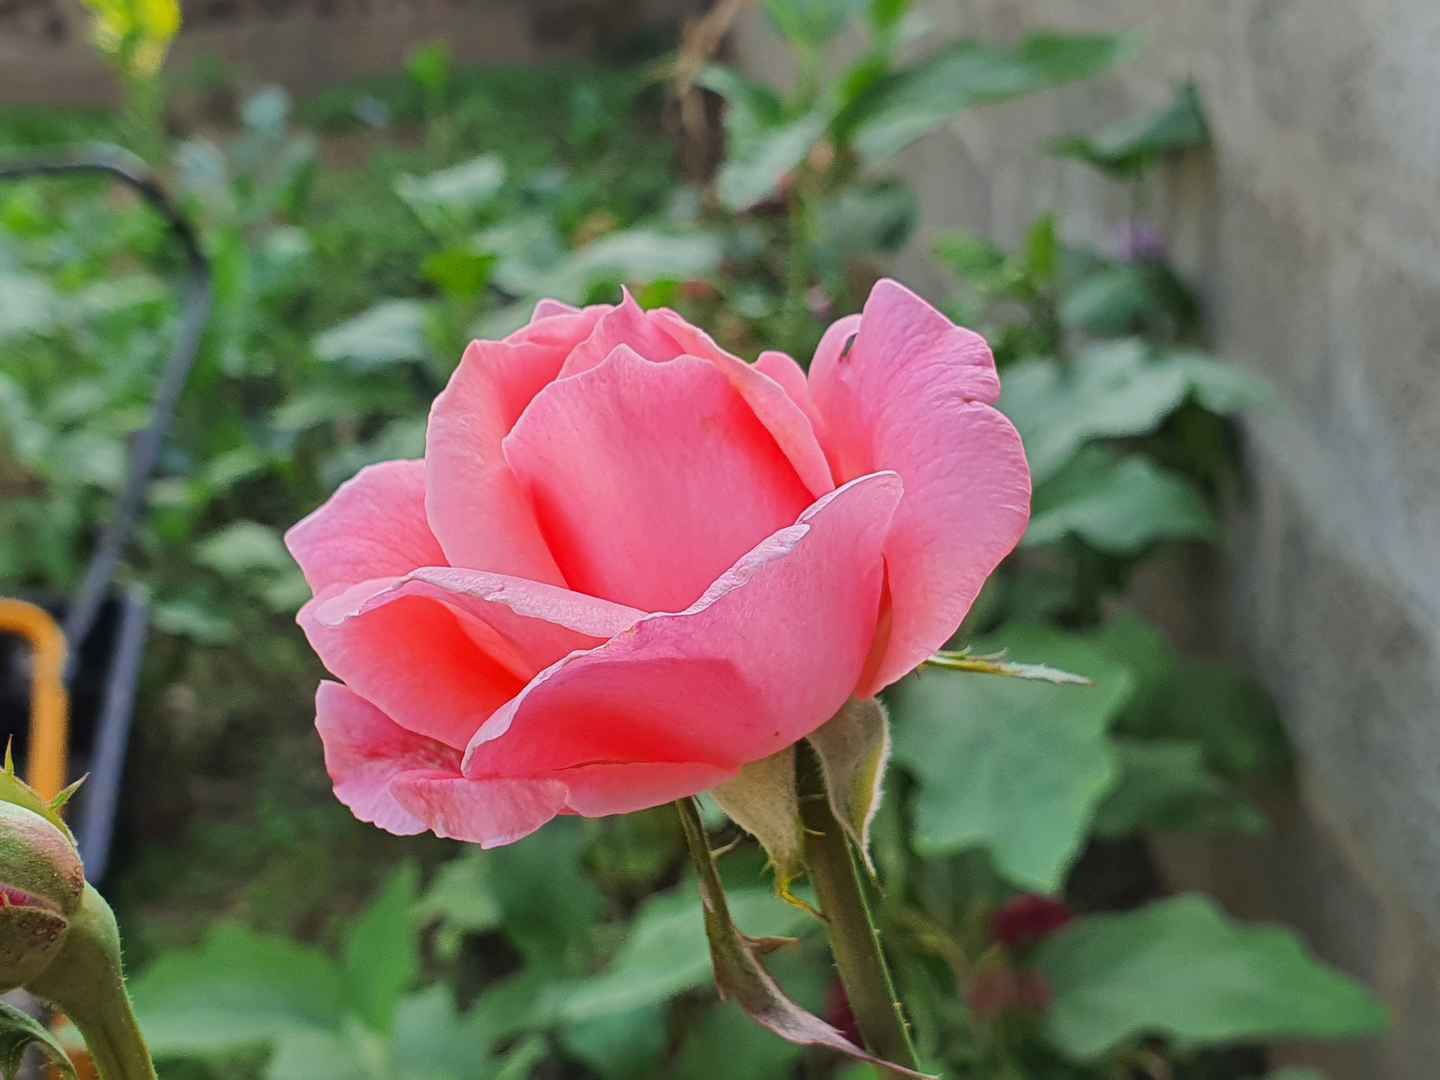 粉红色玫瑰花朵壁纸